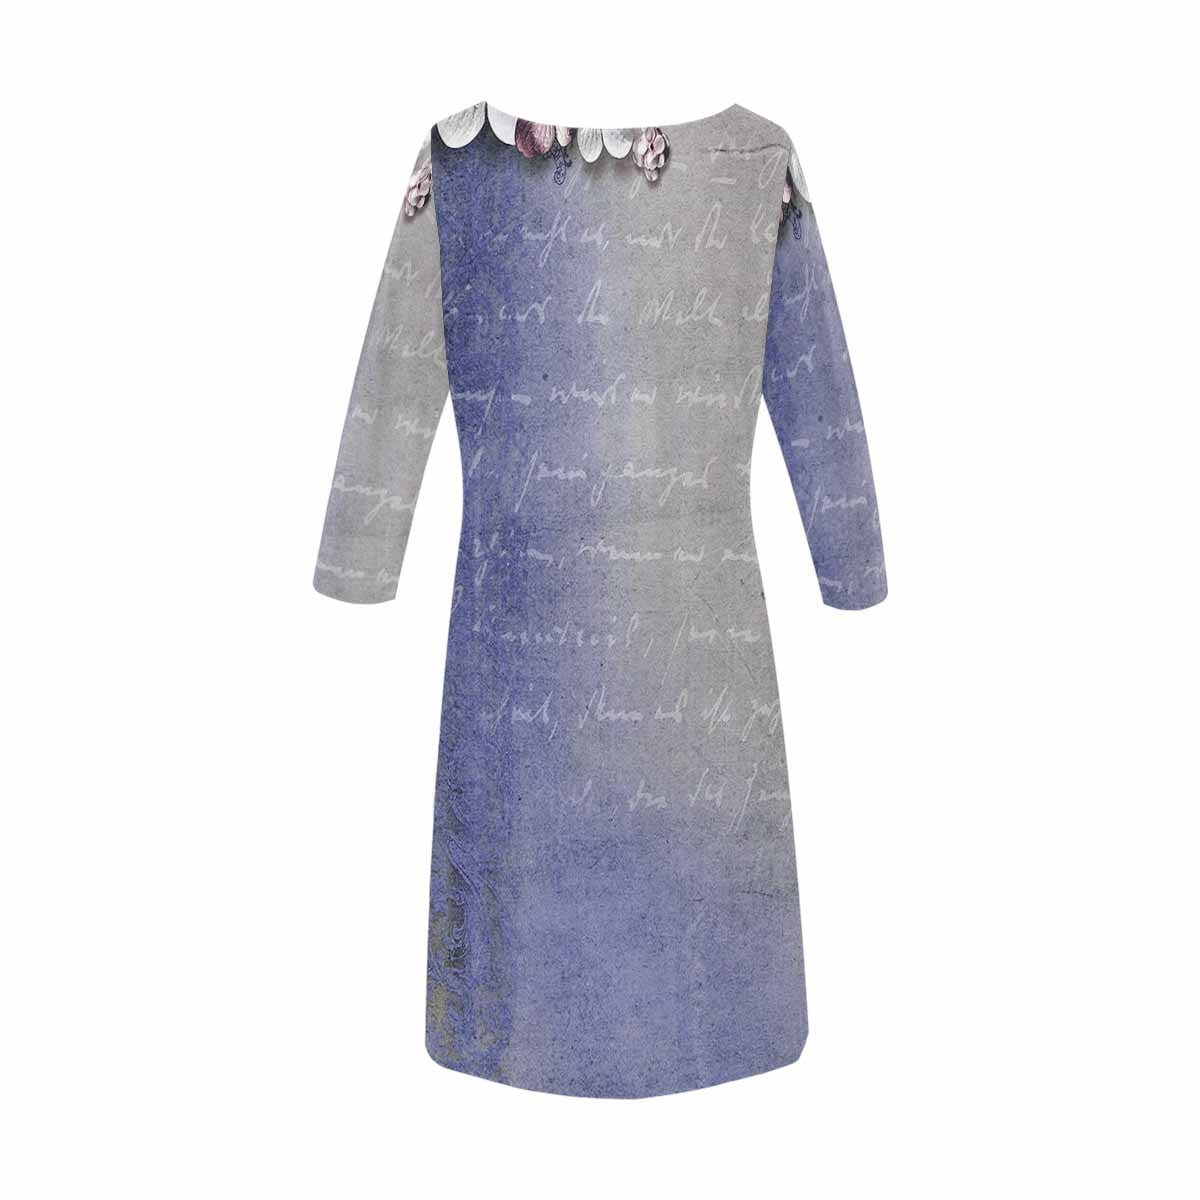 Antique General loose dress, MODEL 29532, design 11